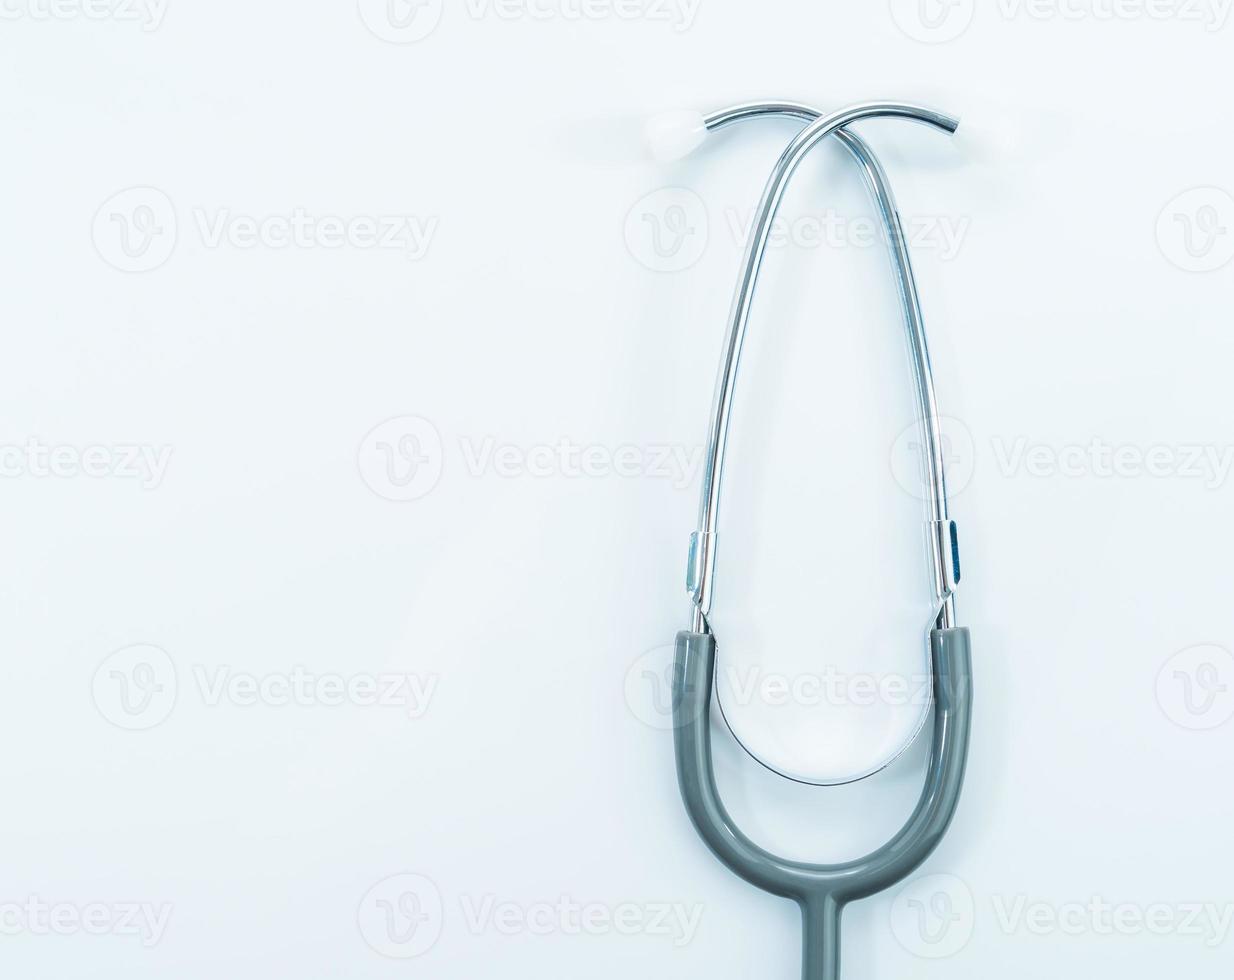 stetoskop för läkarkontroll på bordet foto